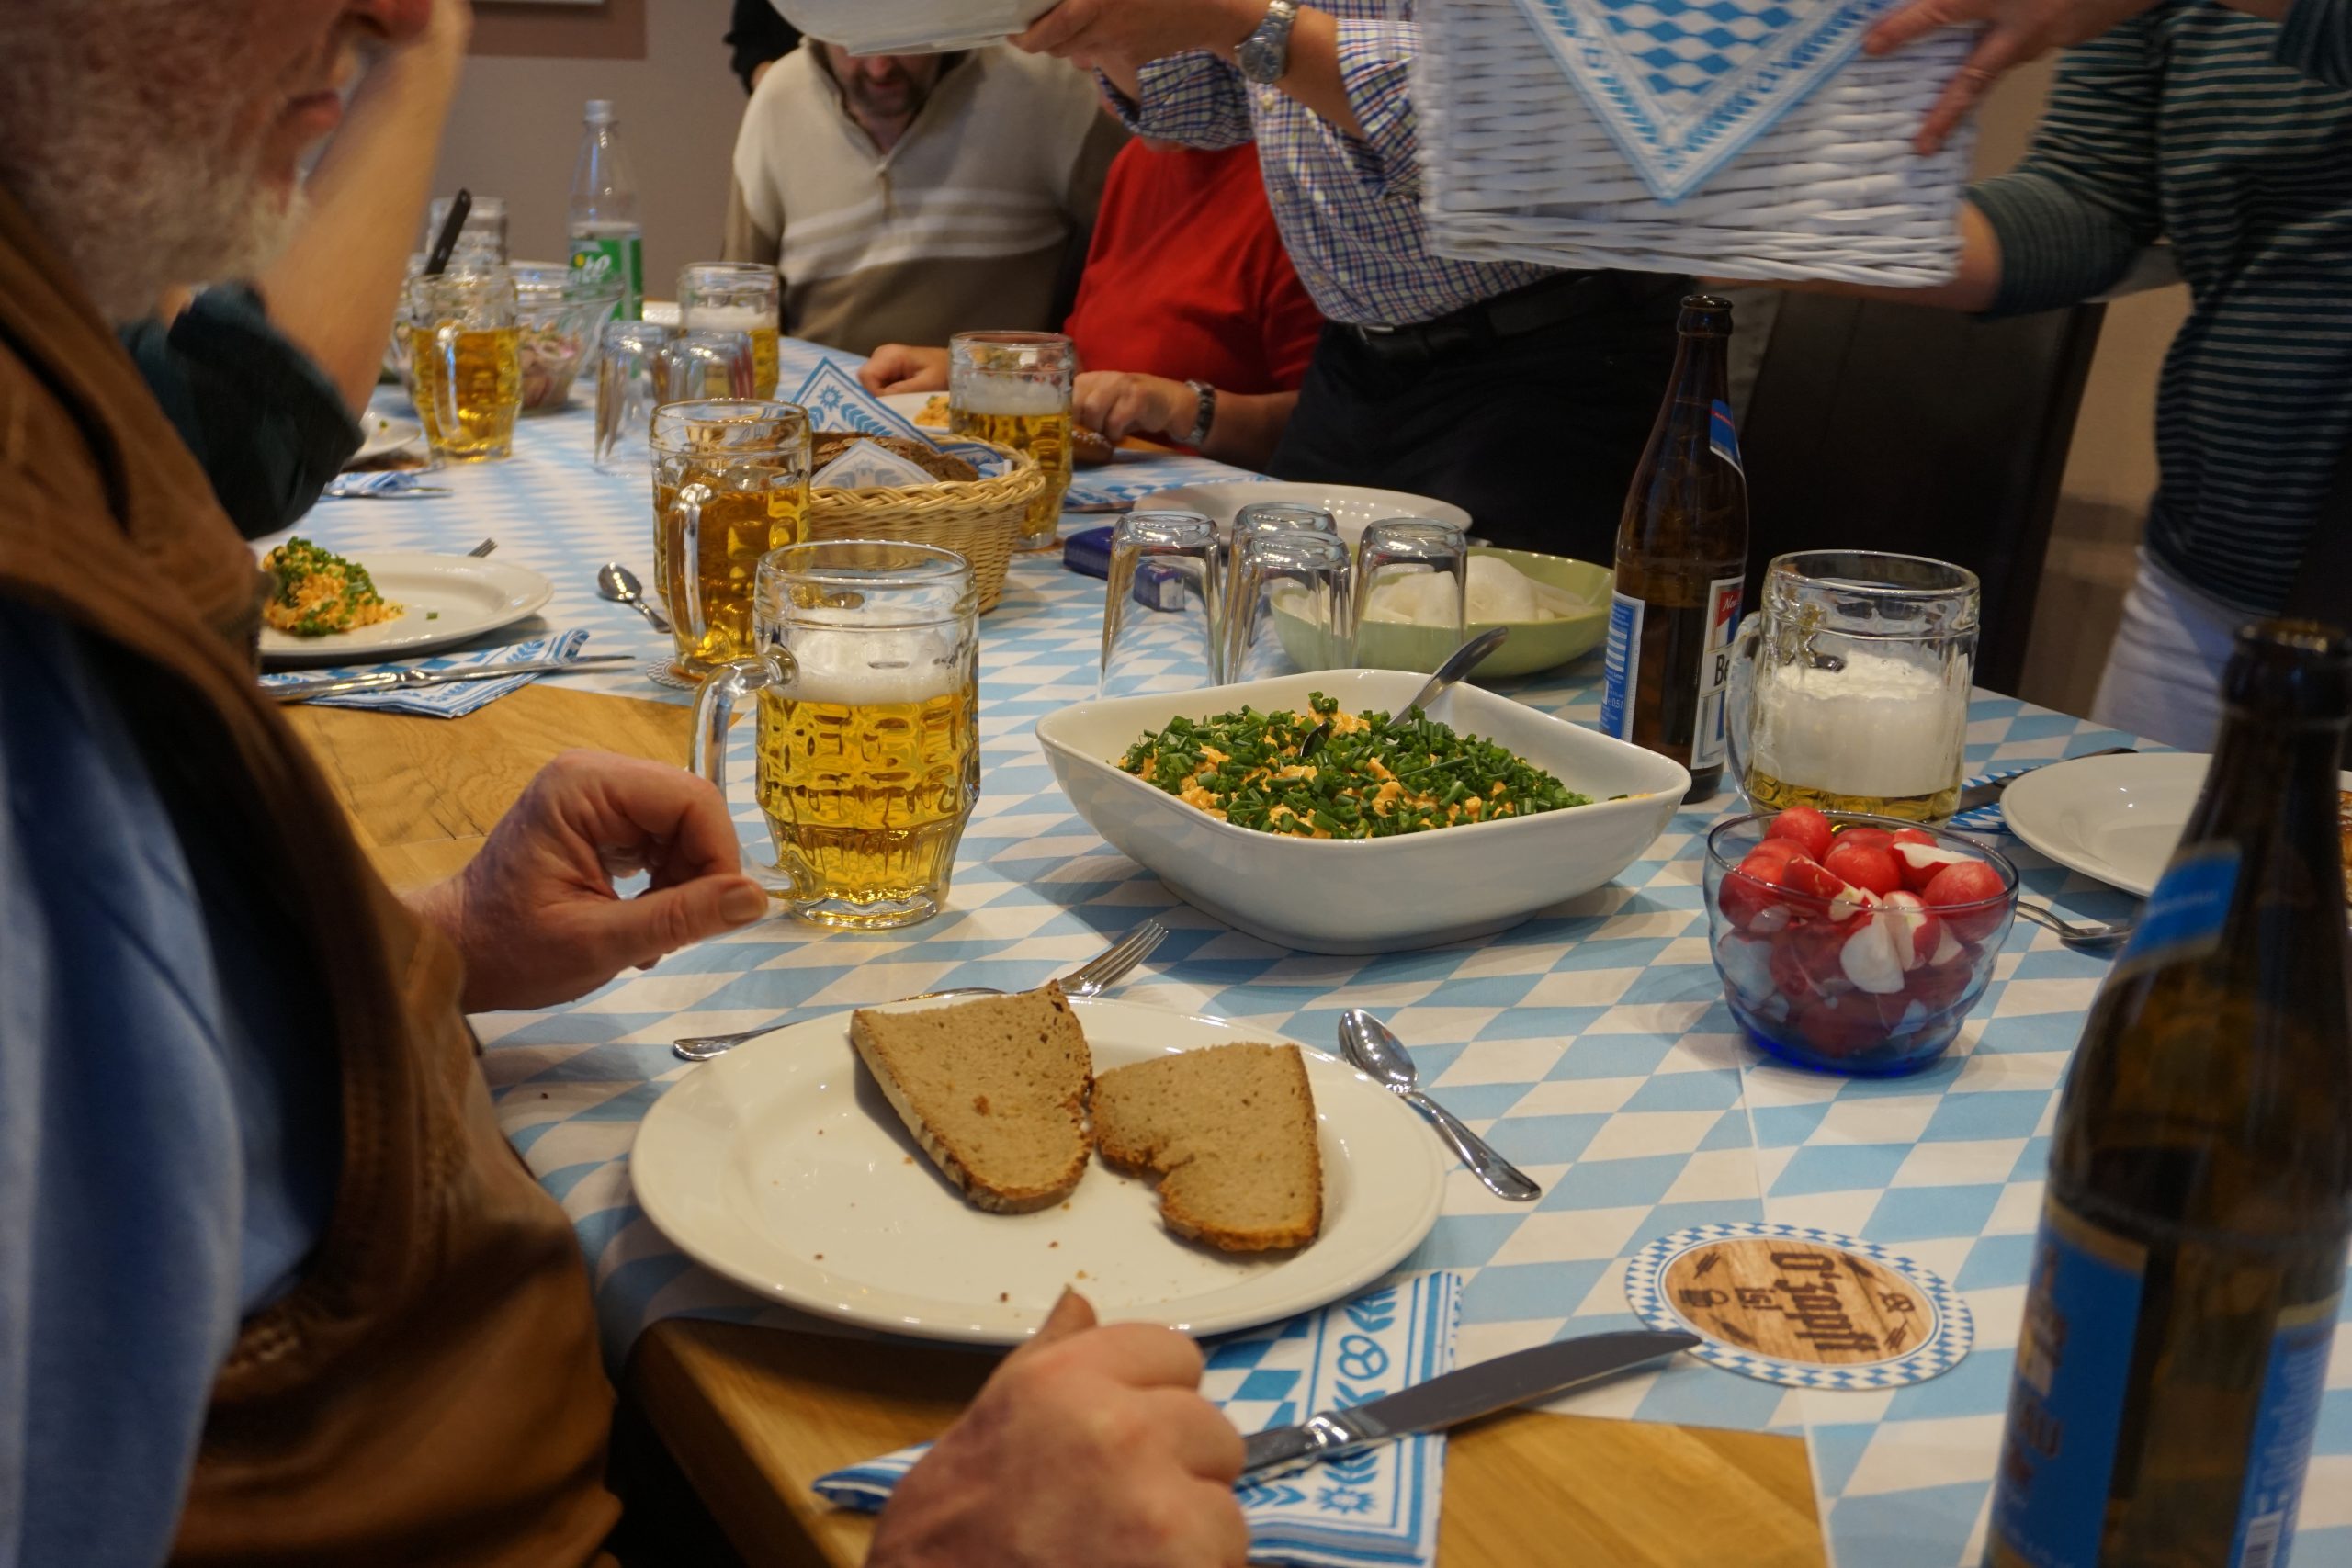 Ein gedeckter Tisch mit einer bayerischen Brotzeit. Mehrere Menschen sitzen an dem Tisch.